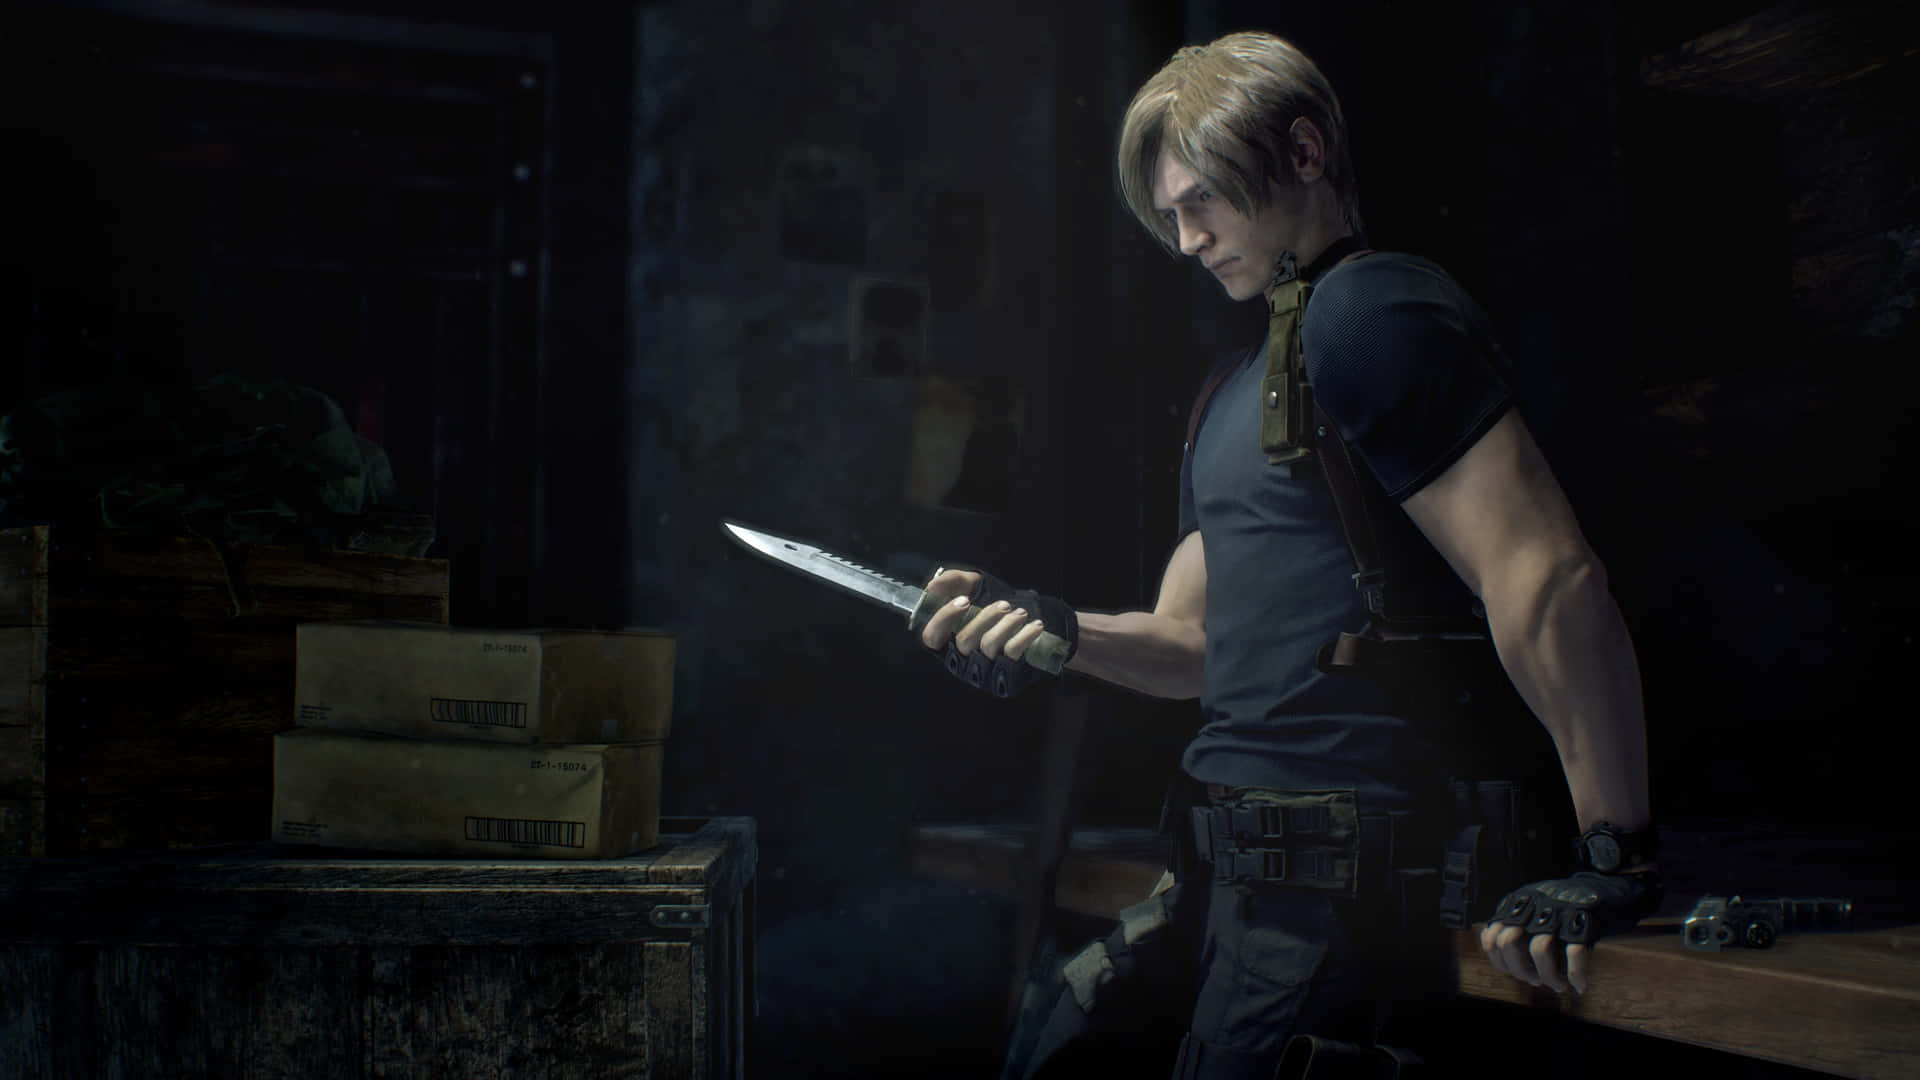 Leon Holding Knife In Resident Evil Wallpaper